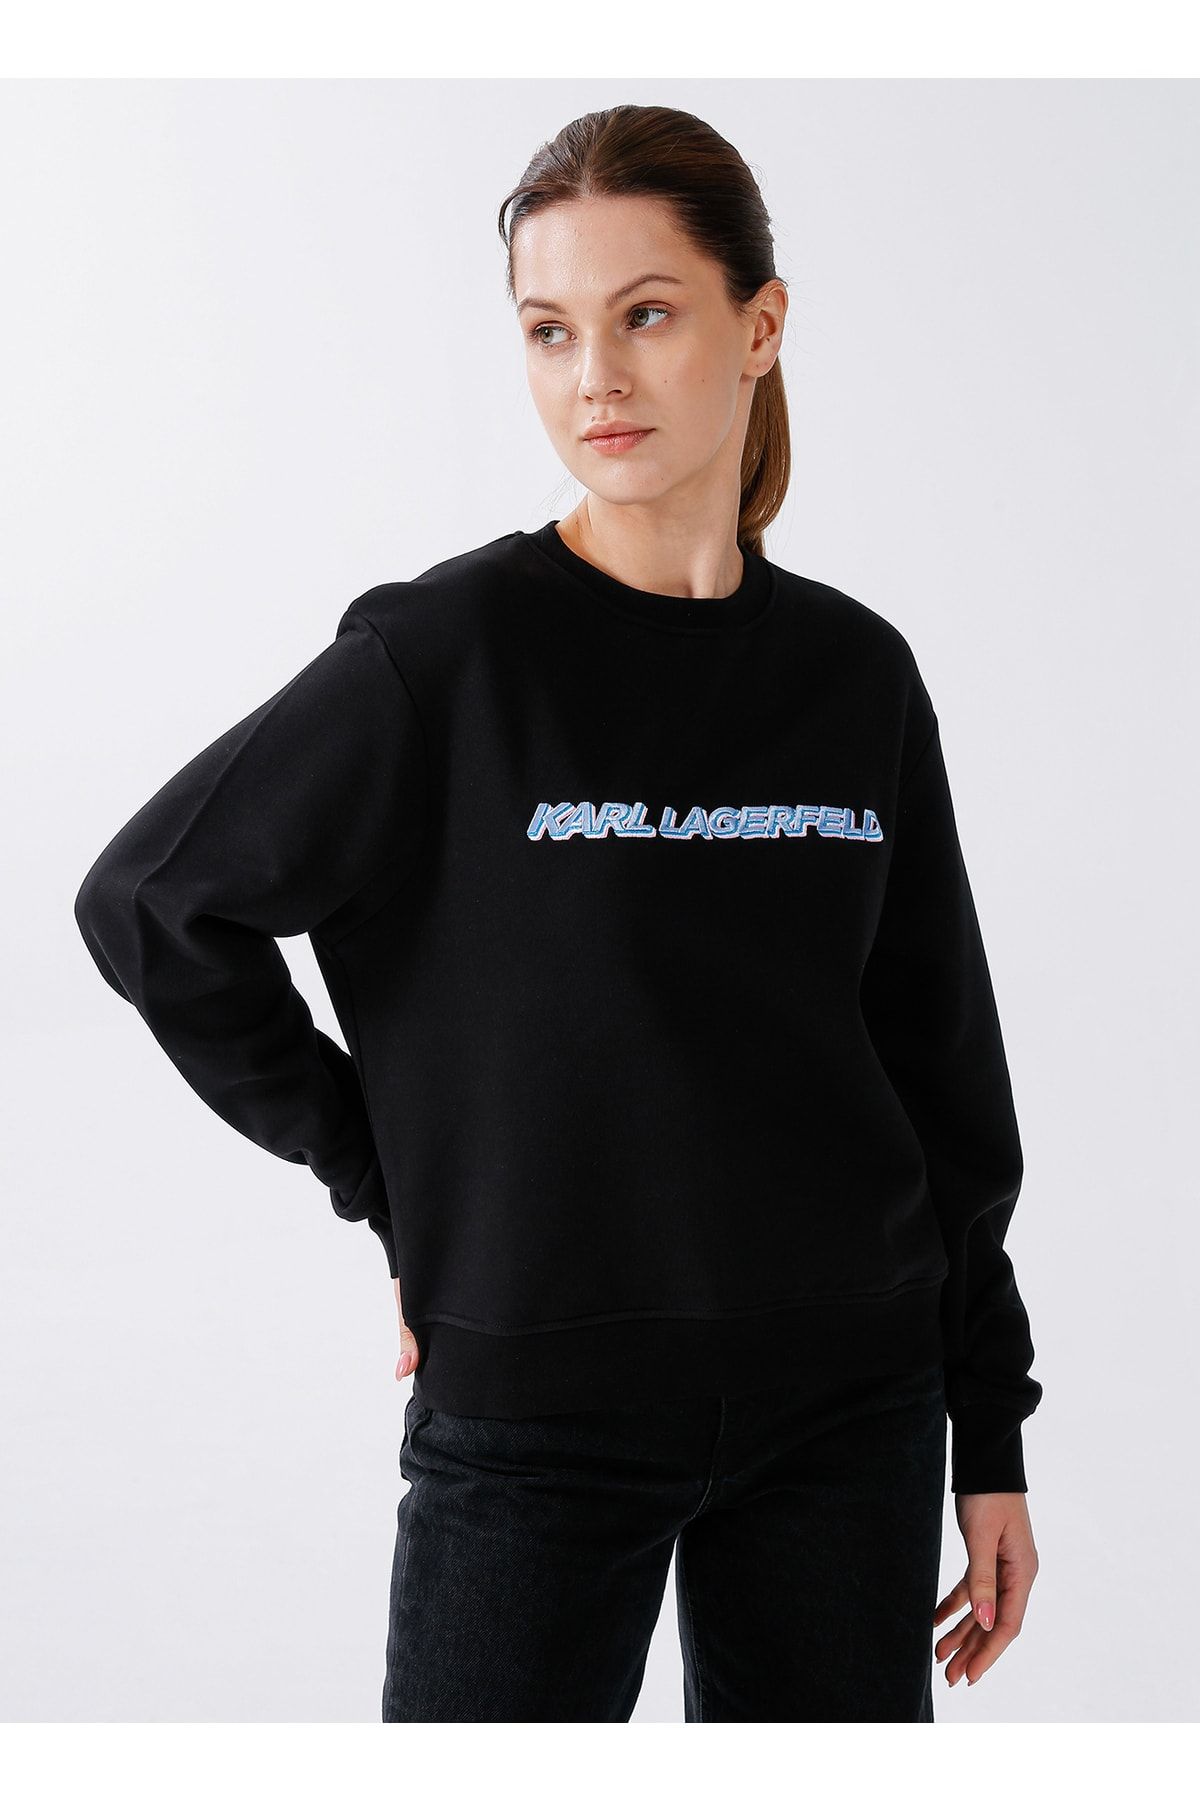 Karl Lagerfeld Bisiklet Yaka Baskılı Siyah Kadın Sweatshirt 225w1804